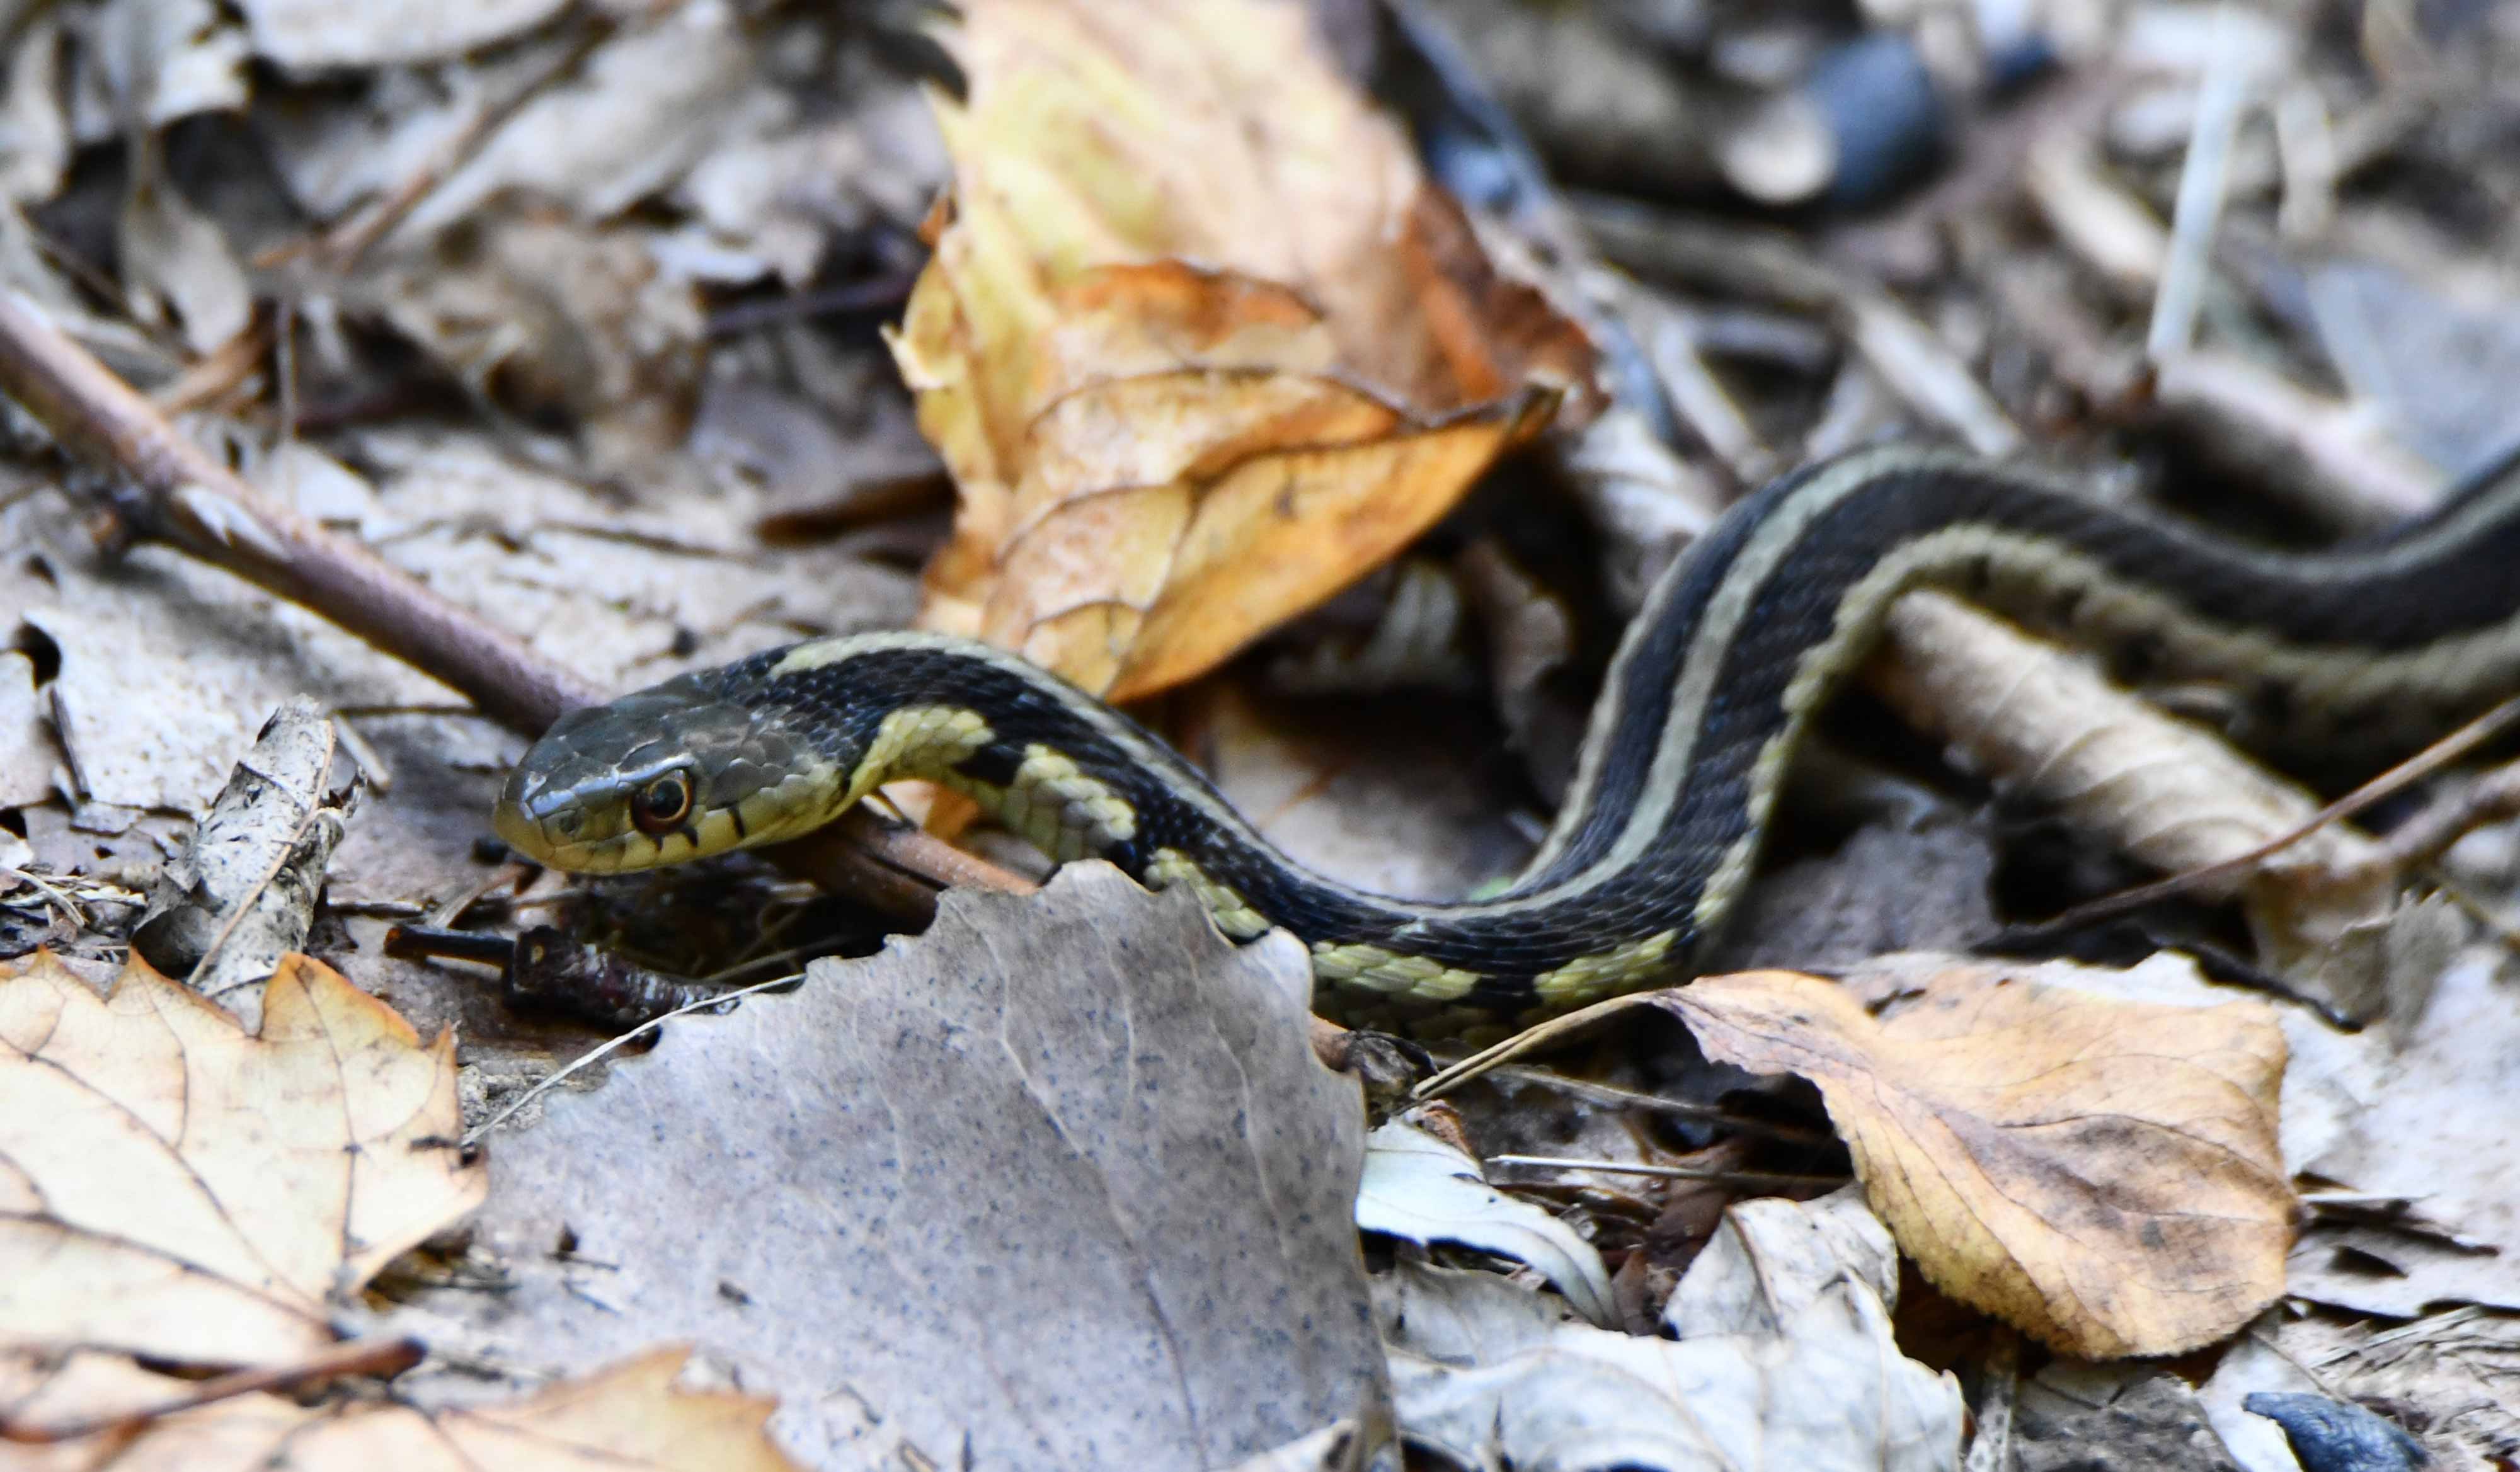 A garter snake slithering across the forest floor.